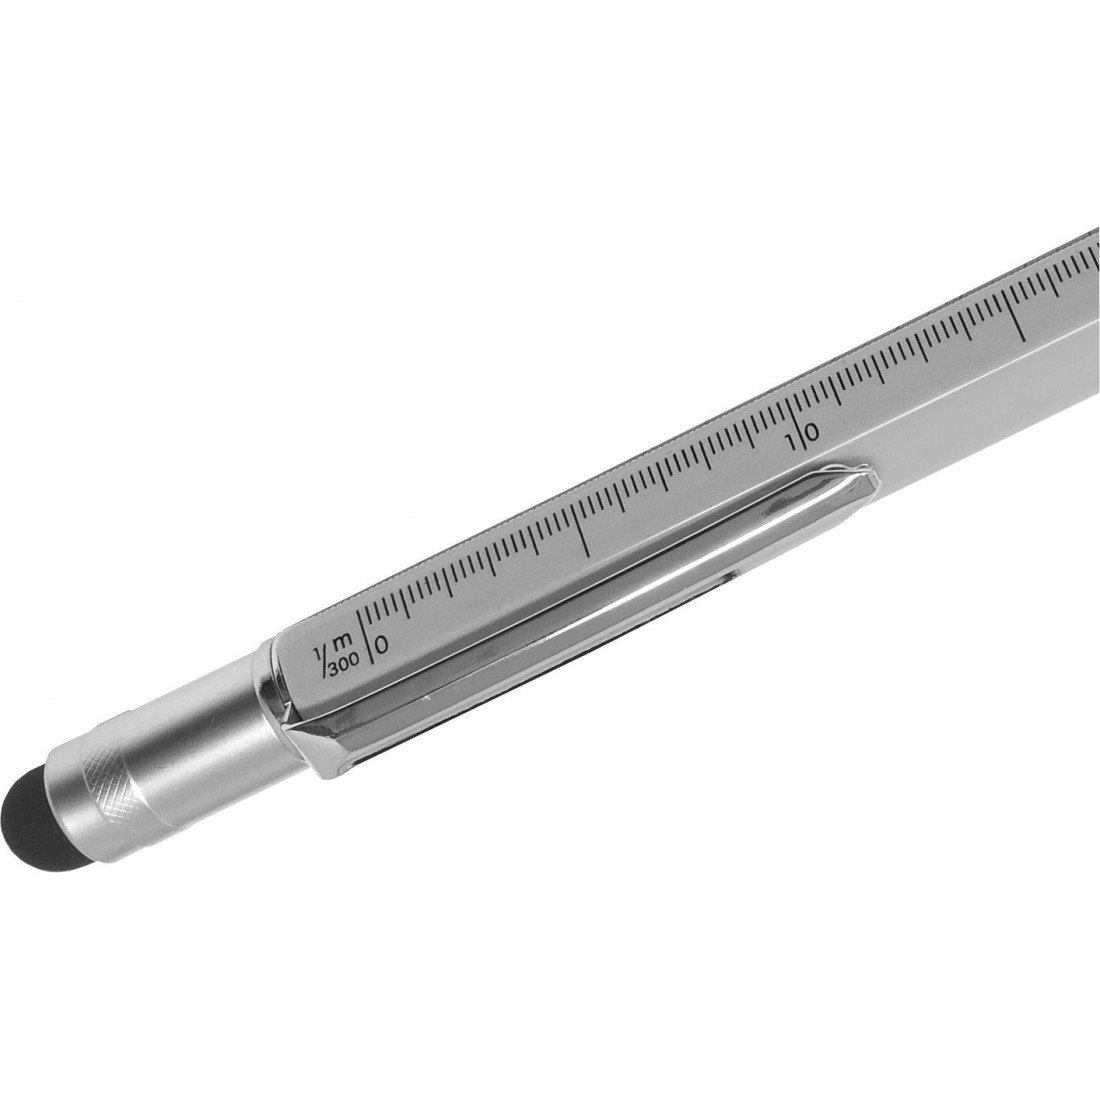 Multipalabra 6 en 1 herramienta multifunción bolígrafo con bolígrafo,  regla, destornillador, una cabeza plana, bolígrafo de pantalla táctil,  medidor